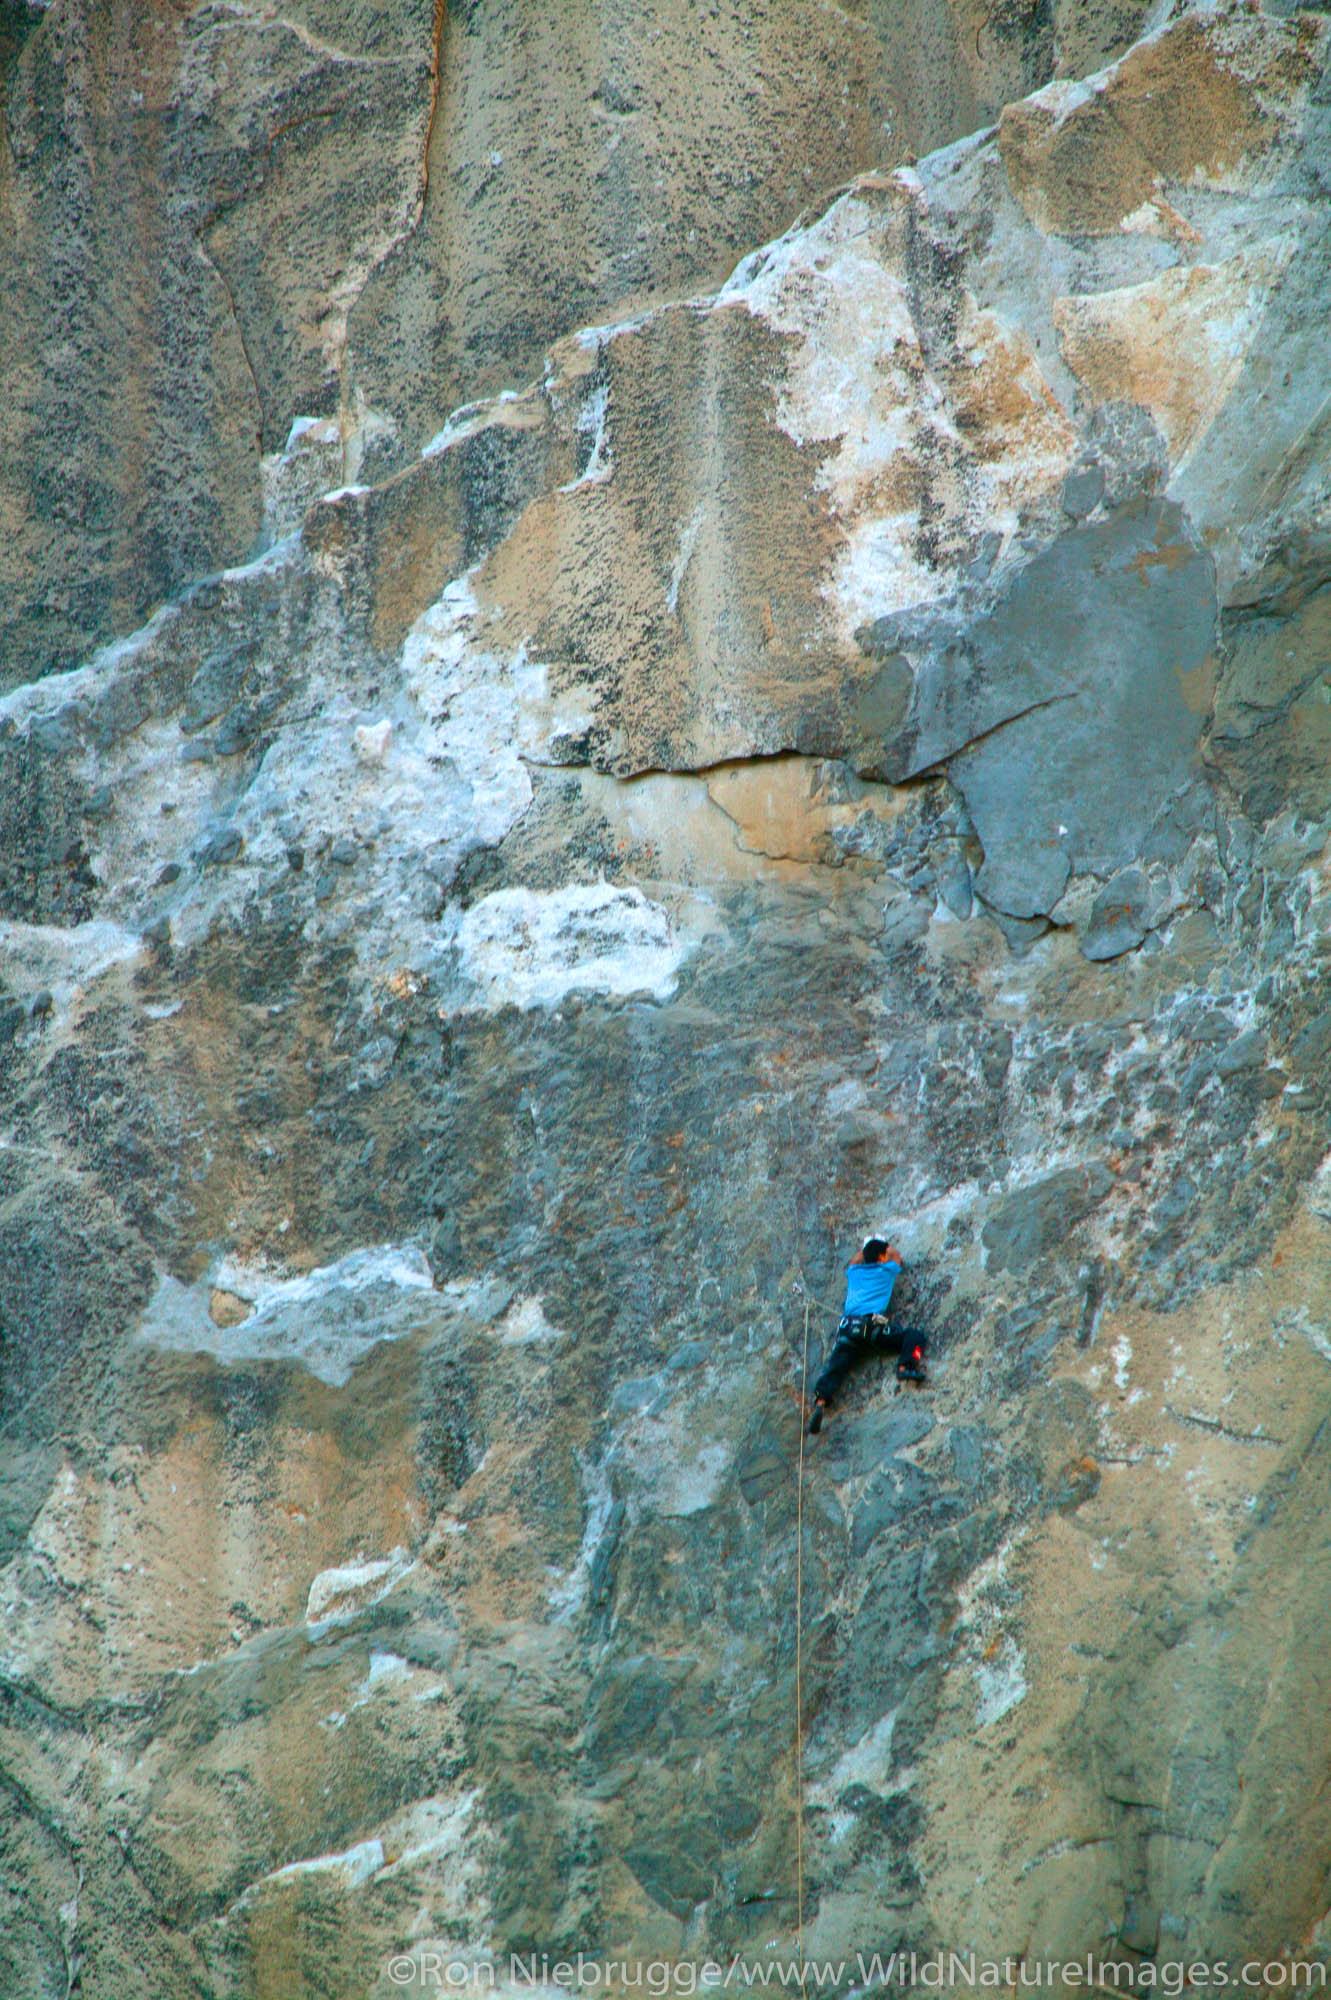 Yuji Hirayama free climbing the El Nino route on El Capitan, Yosemite National Park, California.